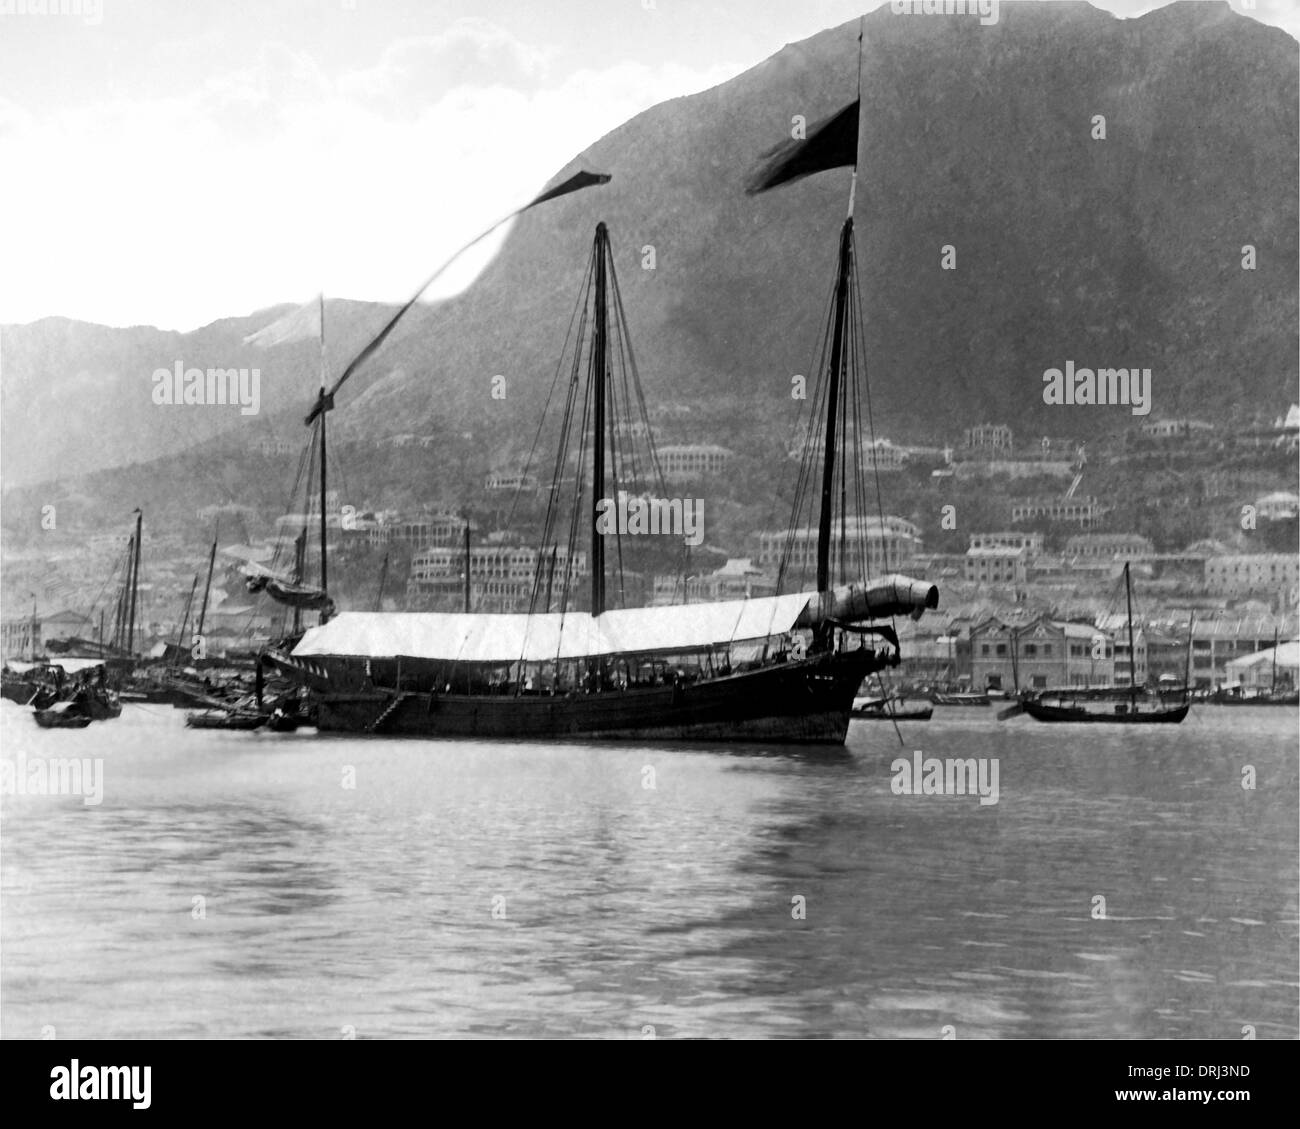 Ship on the water, Hong Kong, China Stock Photo